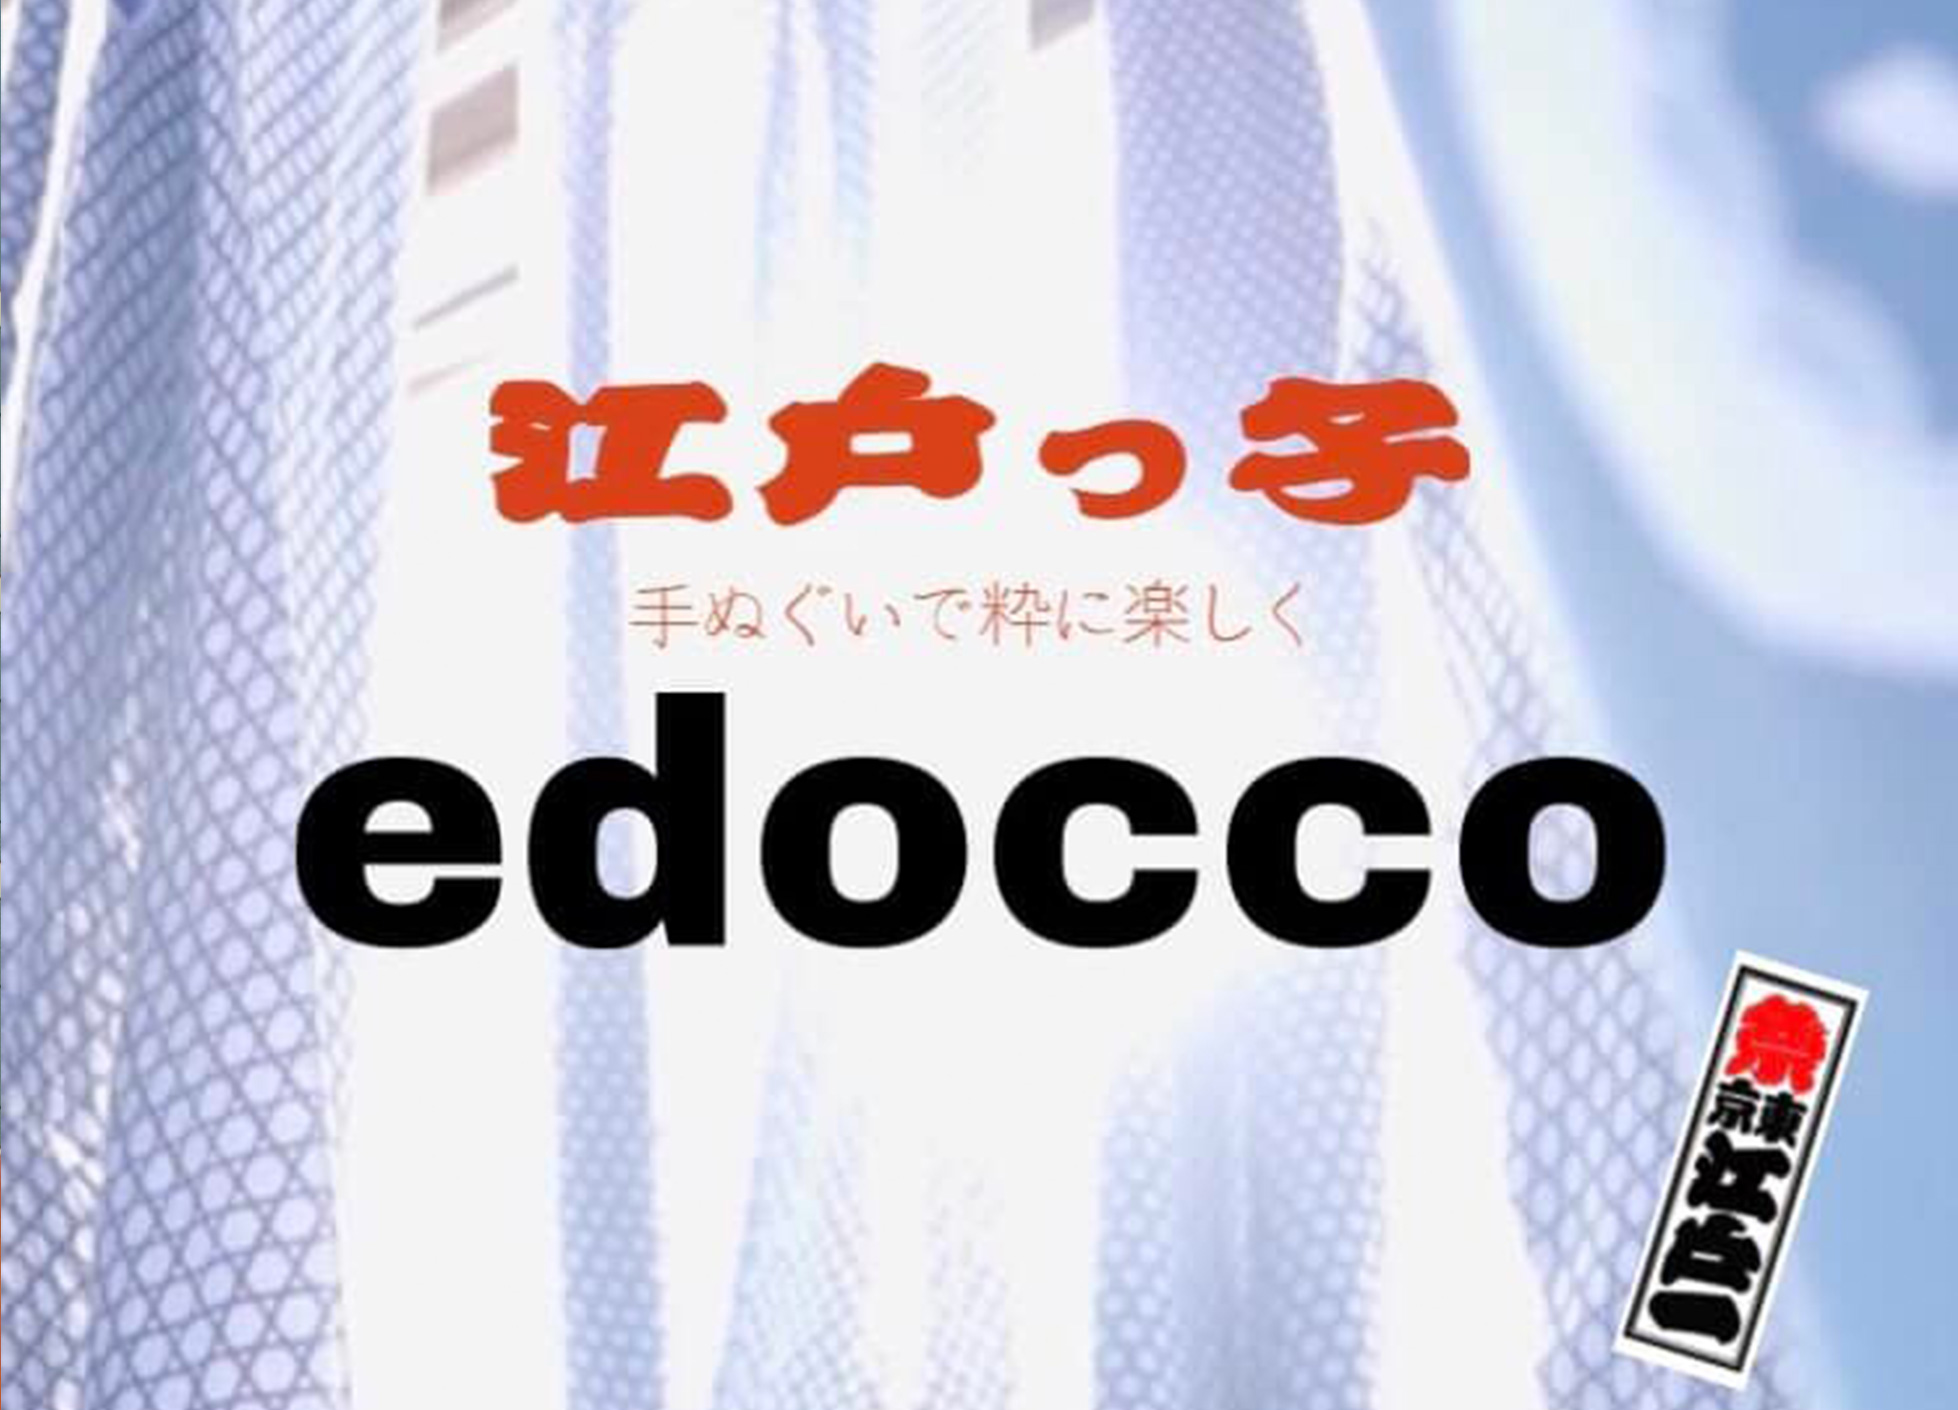 edocco